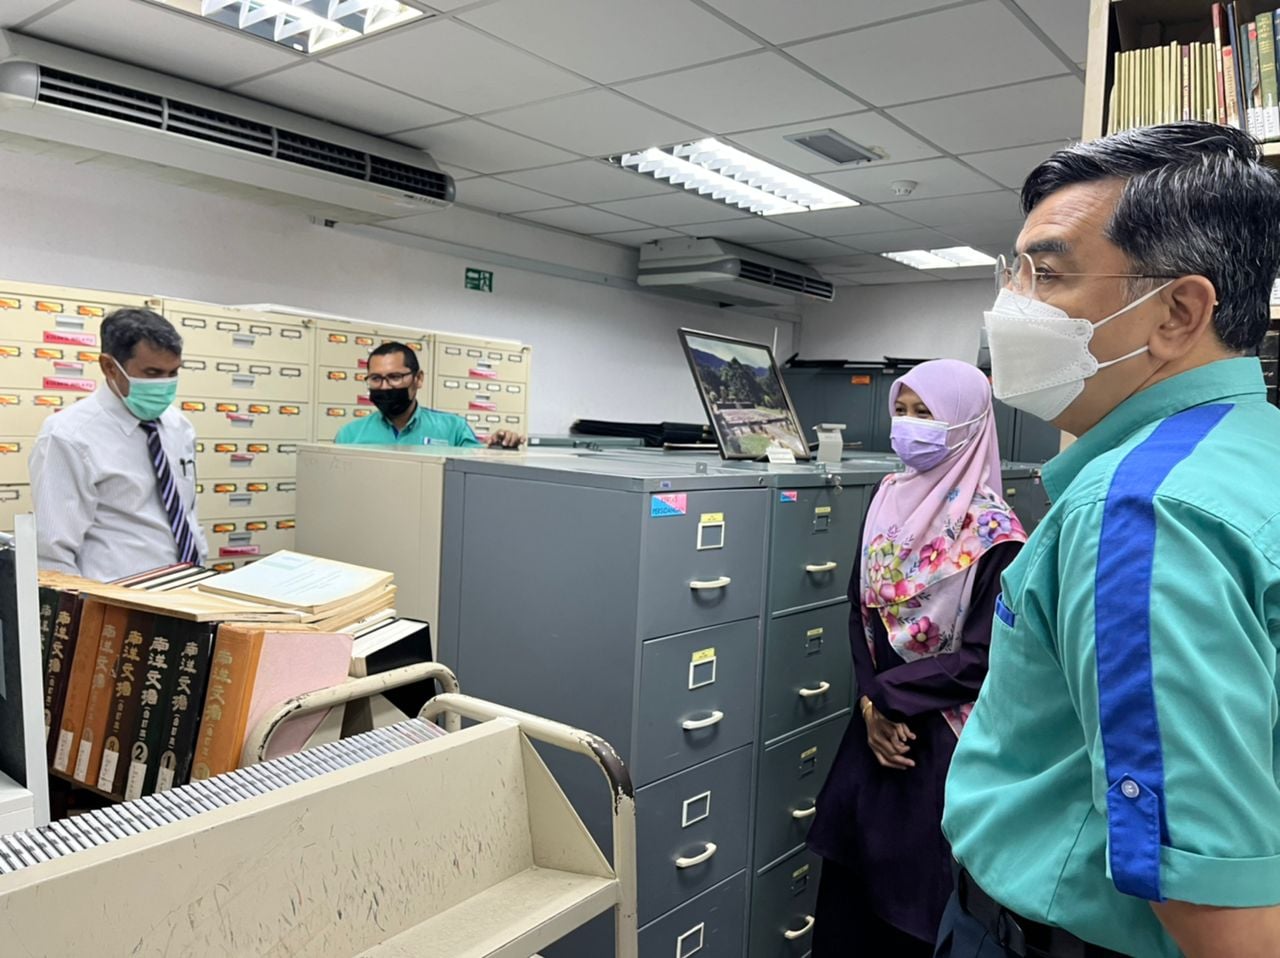 Perpustakaan ATMA UKM sokong pembangunan Pangkalan Data Tamadun Pahang